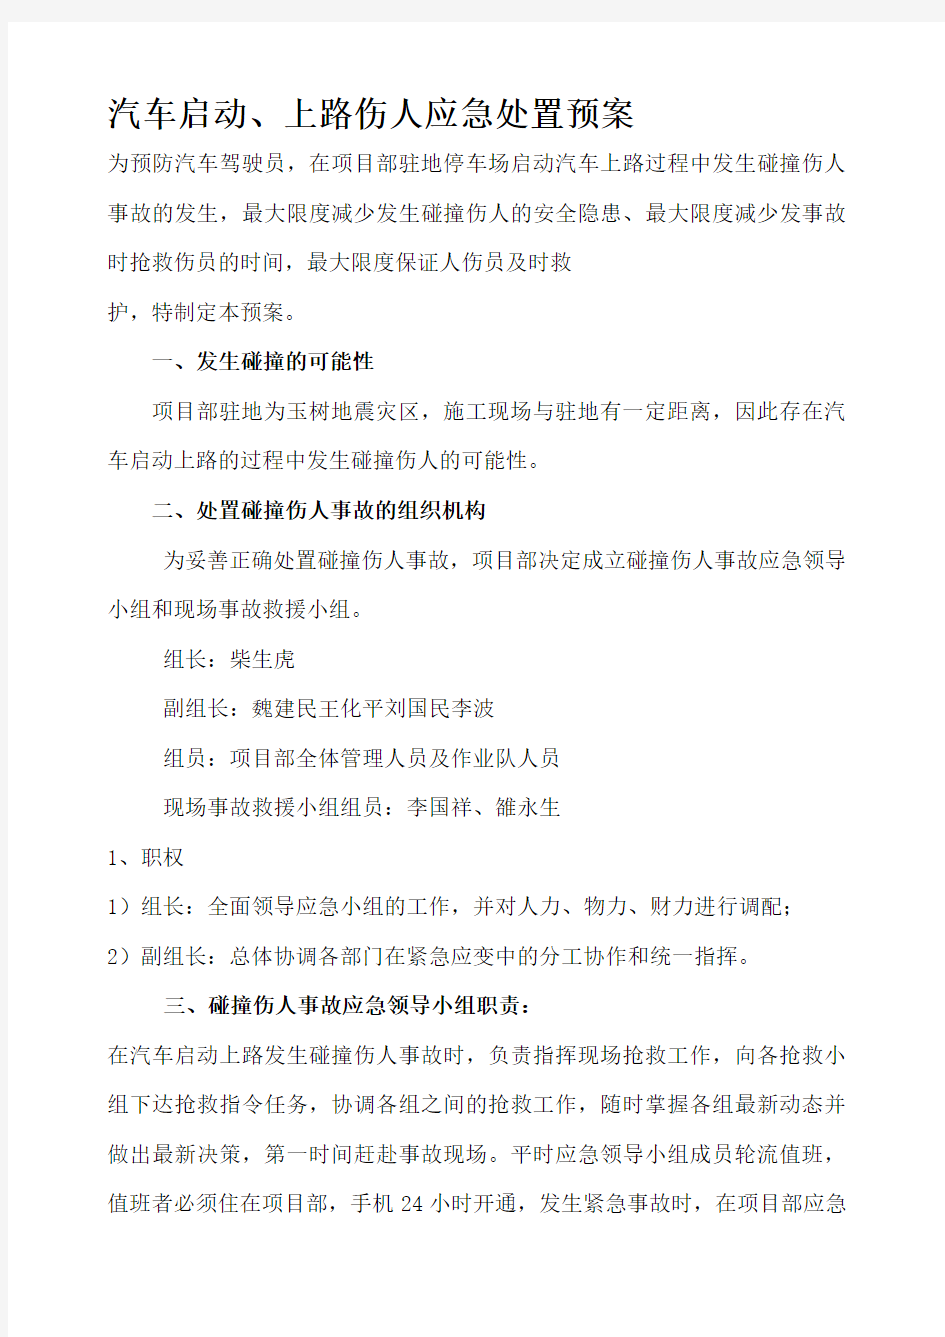 中国铁建玉树地震灾后重建指挥部第一项目部应急预案手册